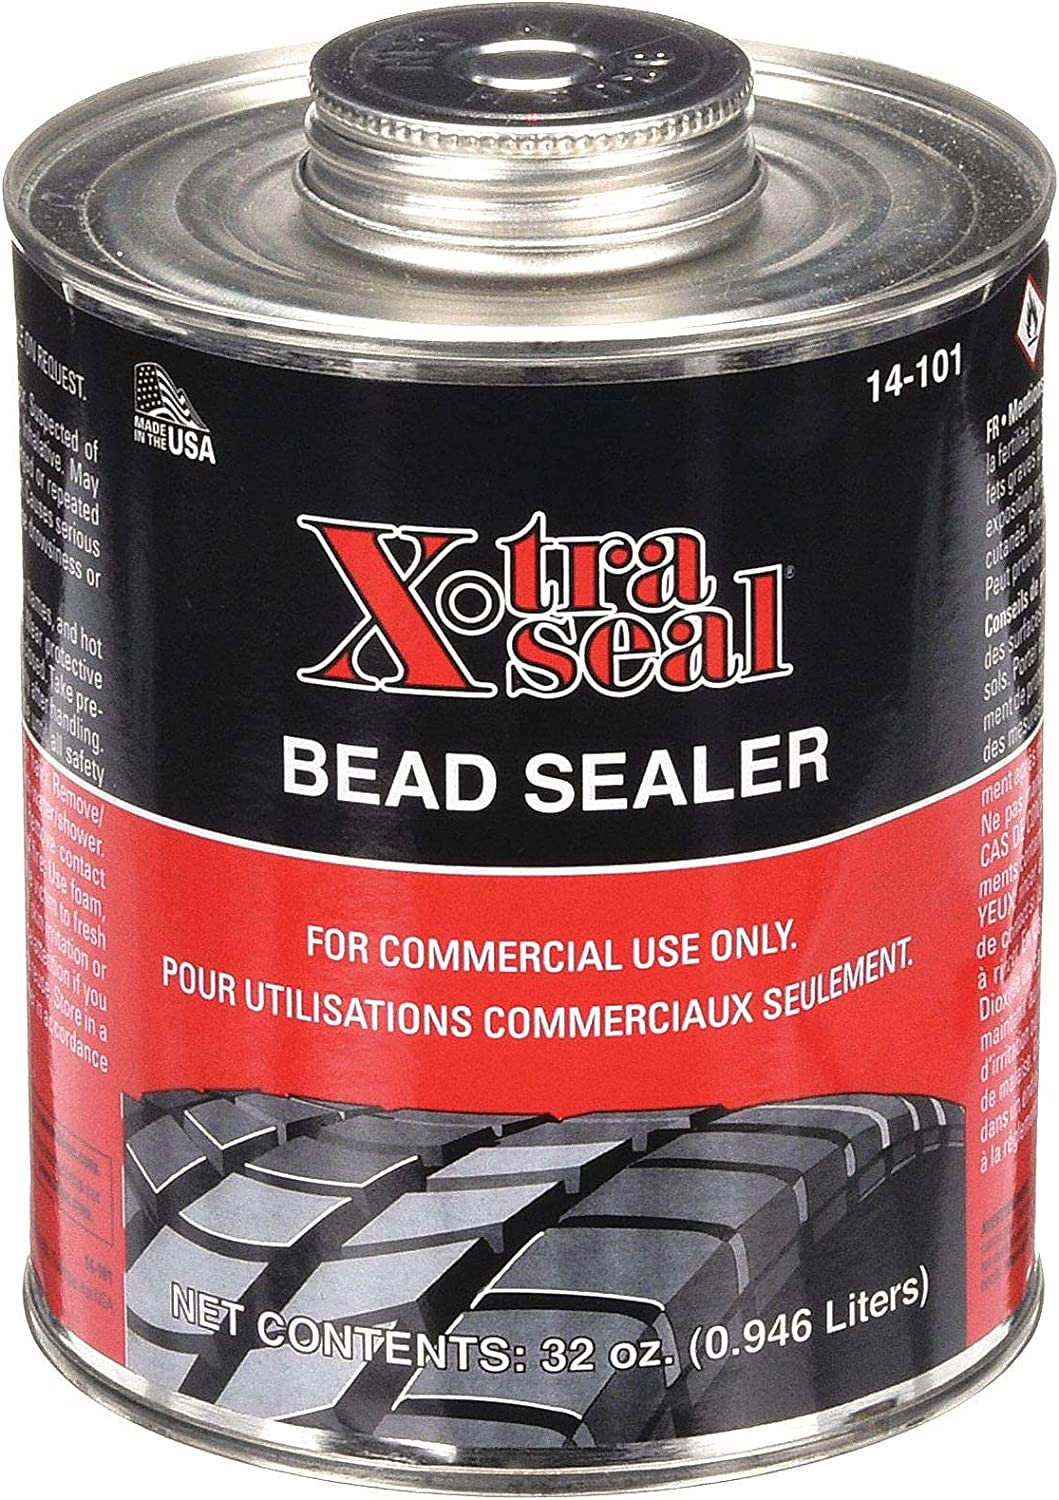 Xtra Seal Extra Heavy Duty Bead Sealer 14-101B (extra Thick)